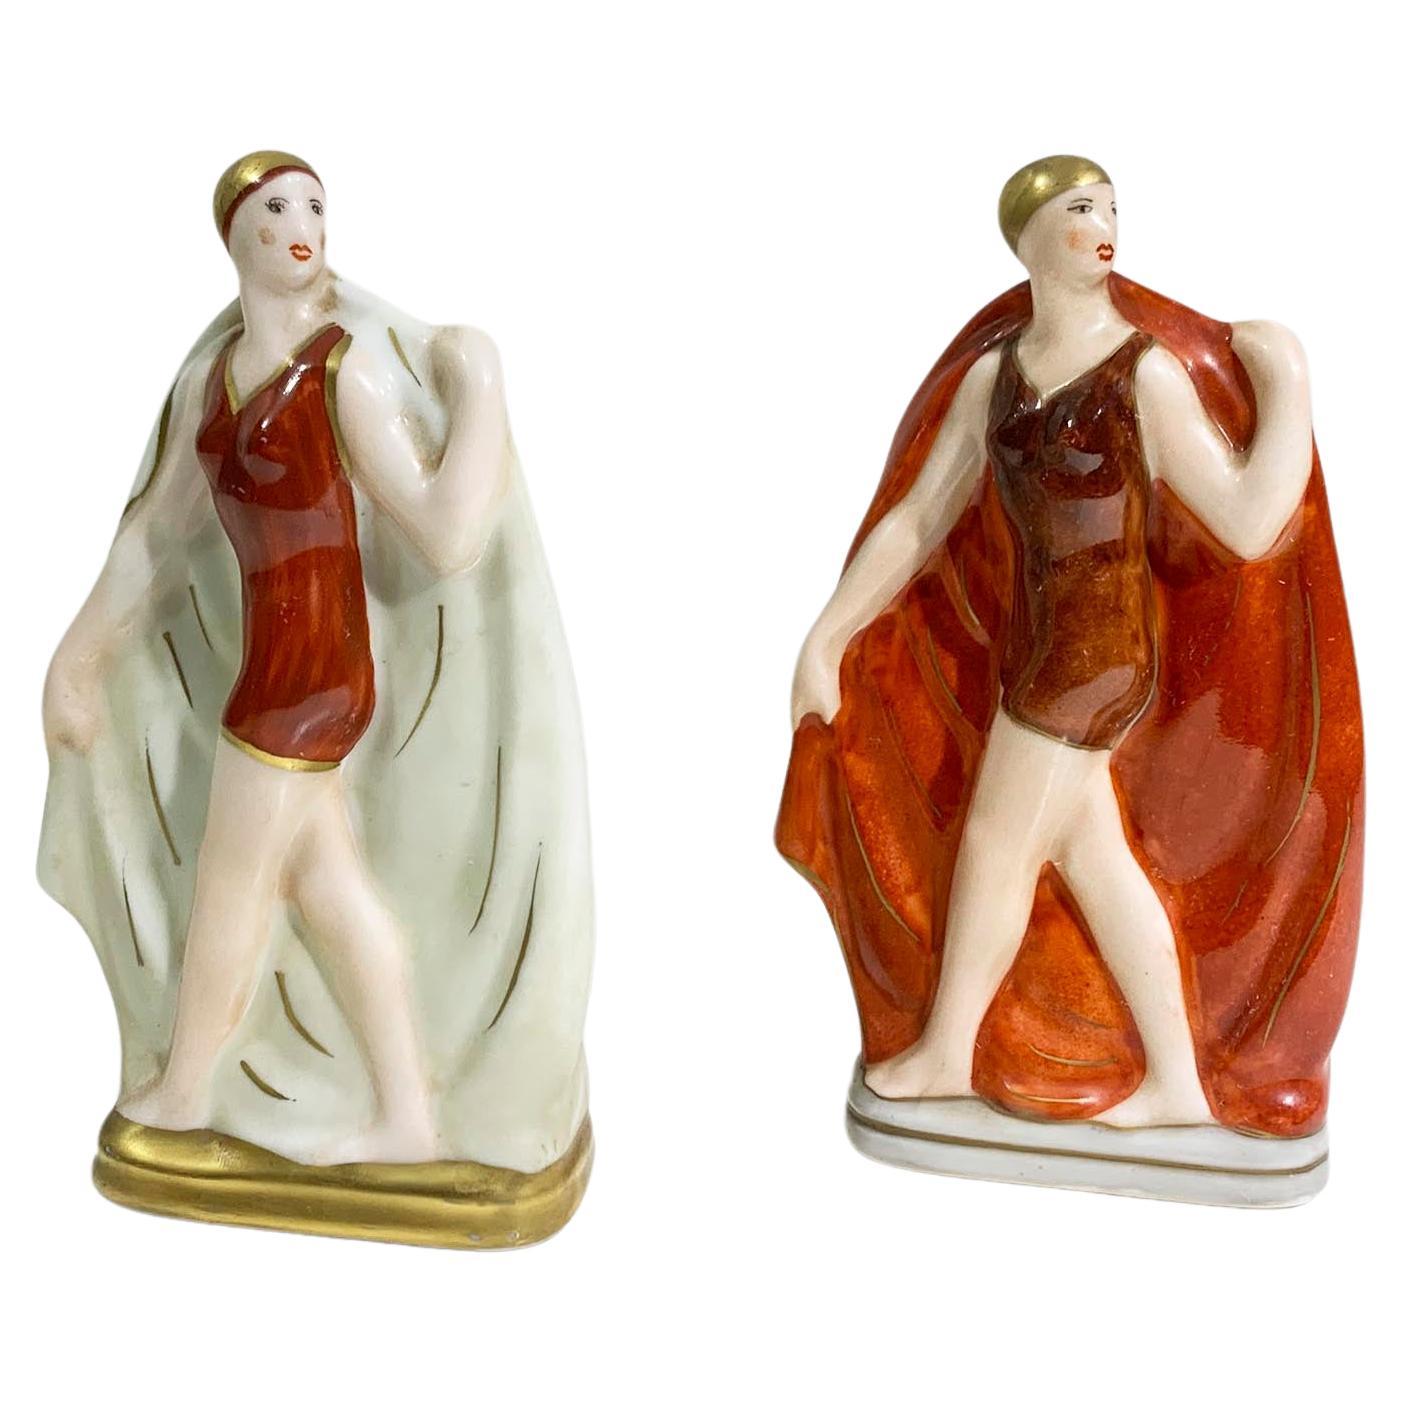 Set of 2 Art Deco Porcelain Figurines Signed Amelin - Rauche / "Limoges France" For Sale